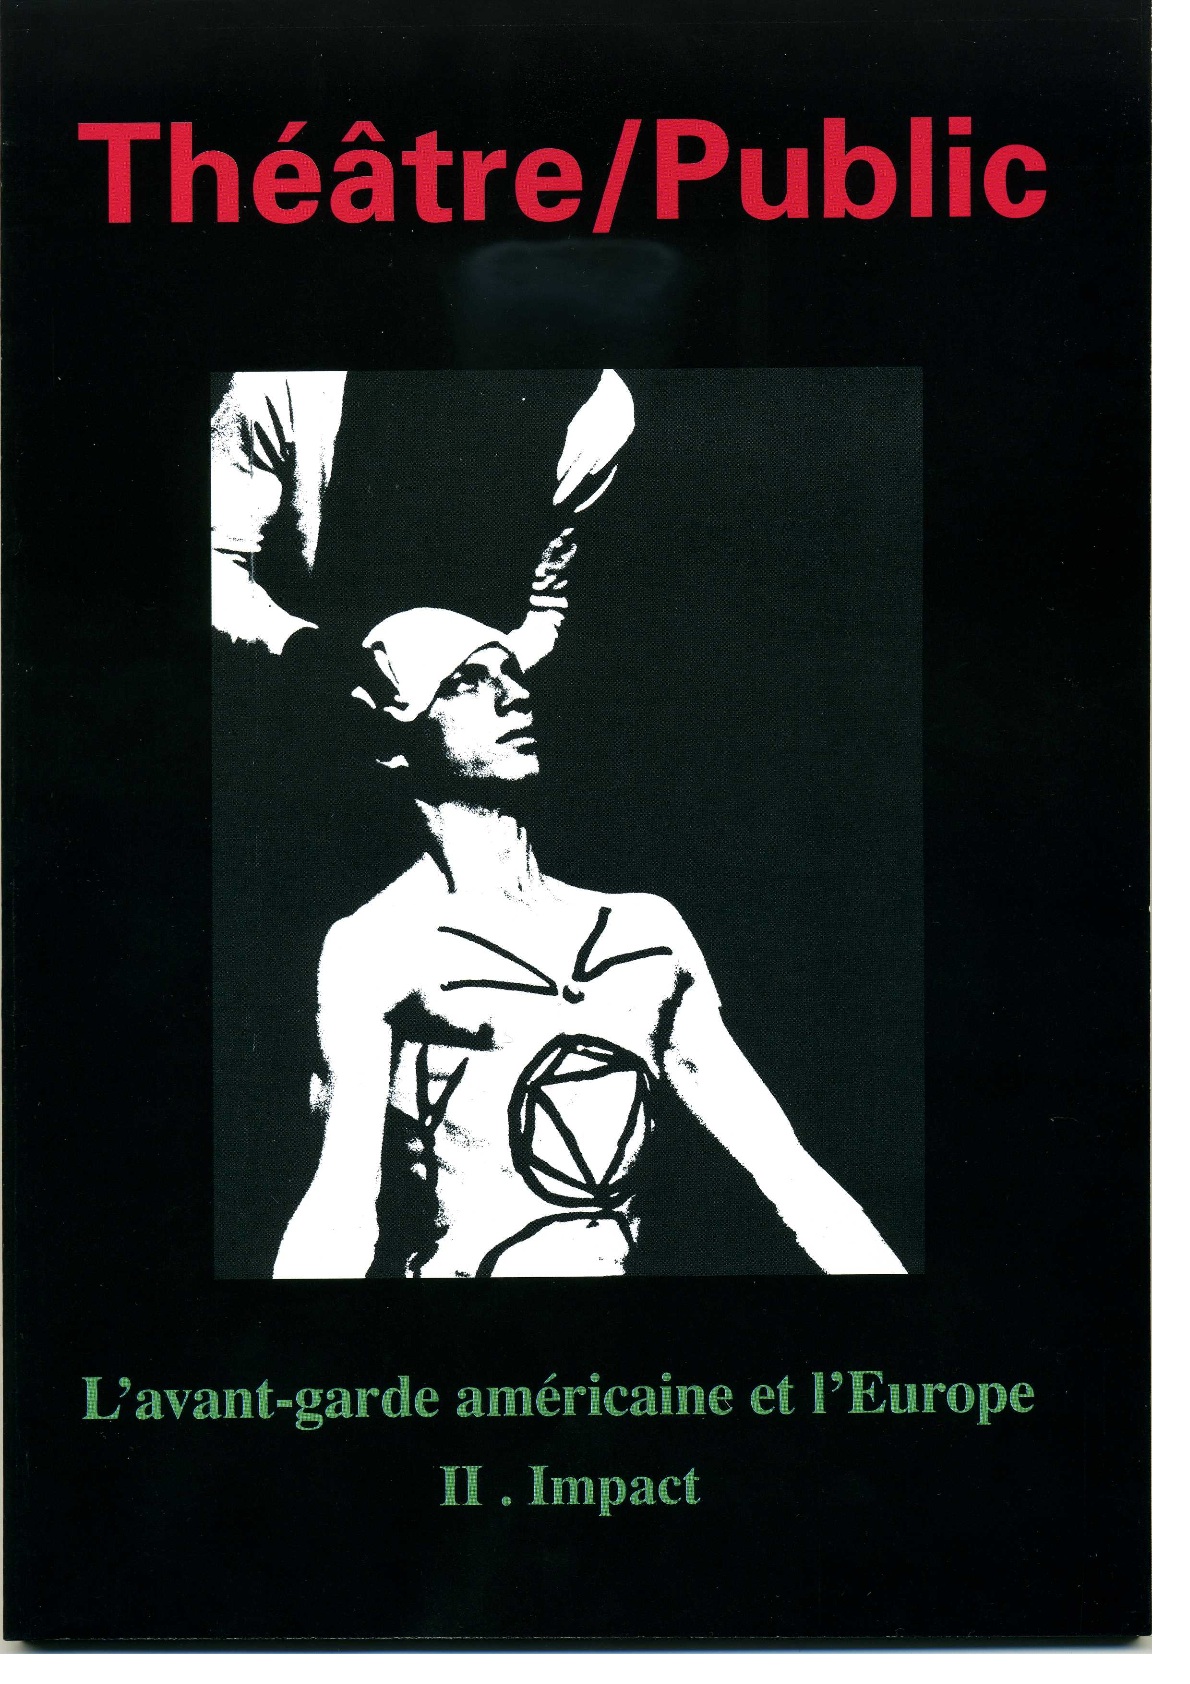 L’avant-garde américaine et l’Europe | Numéro 191 | Théâtre/Public